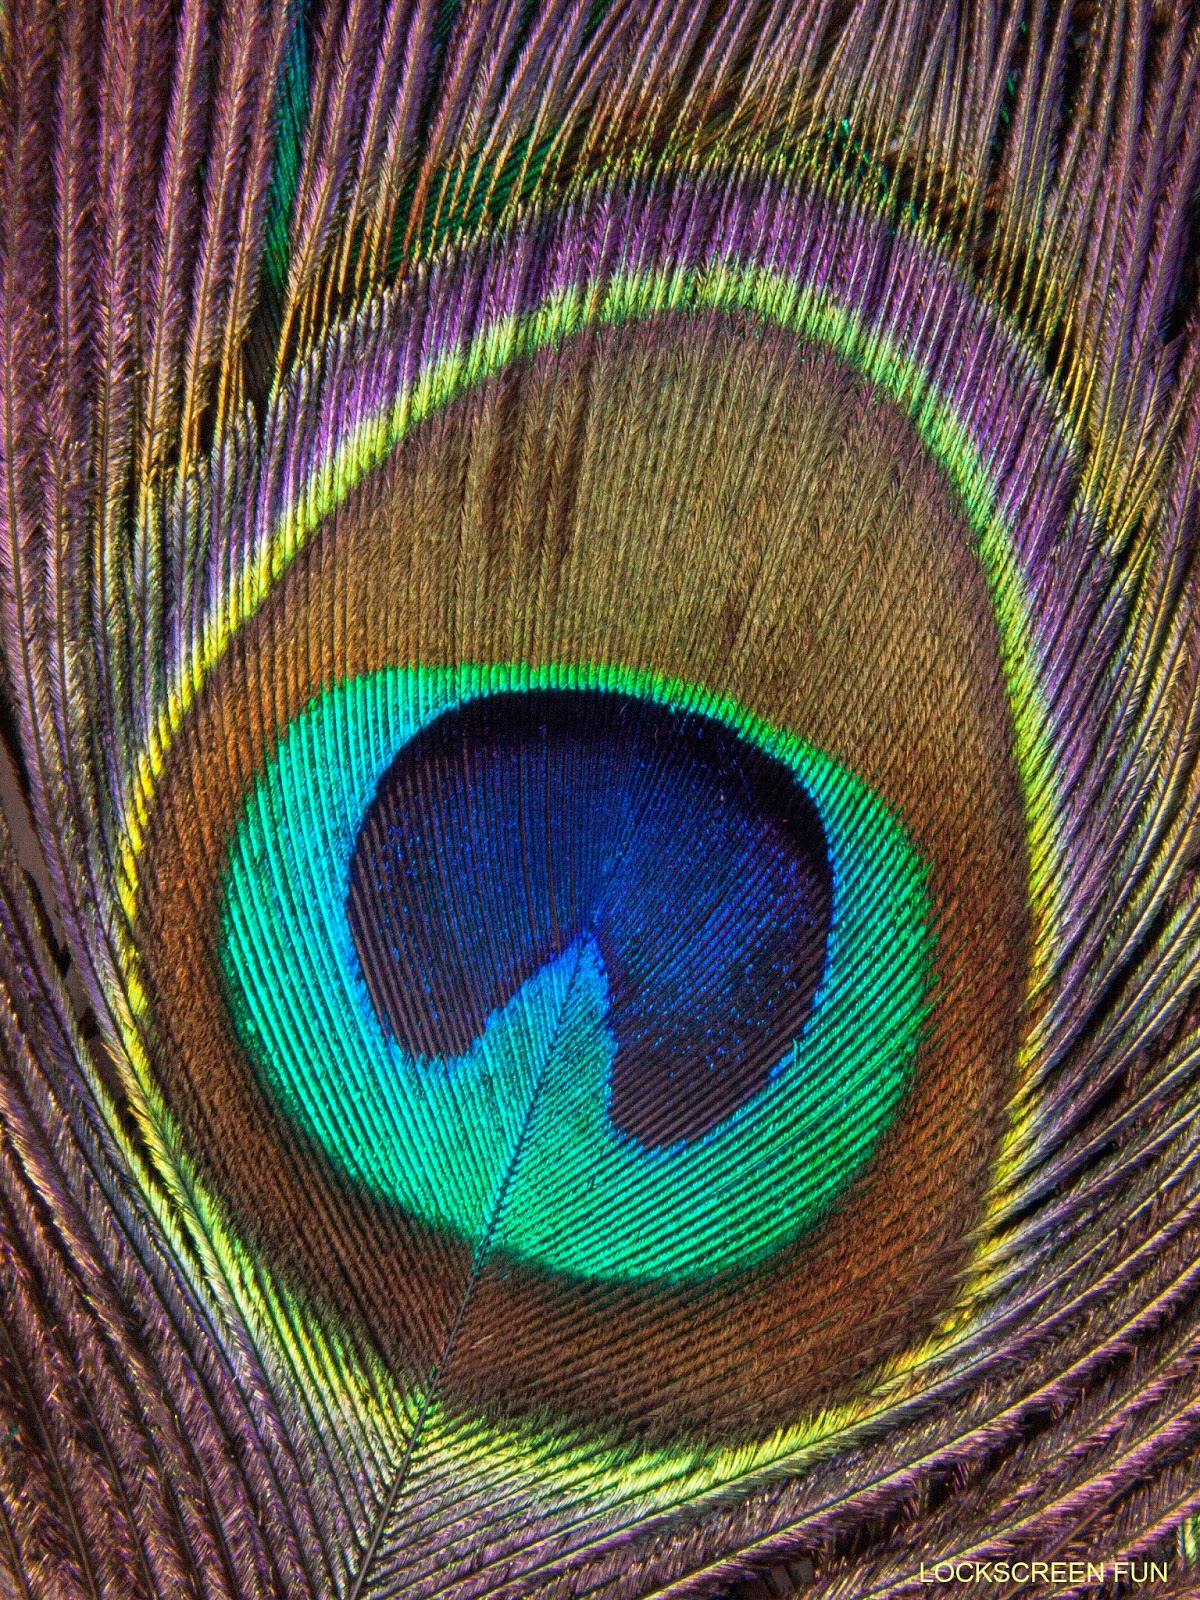 Lockscreenfun Peacock Feather iPad Mini Background